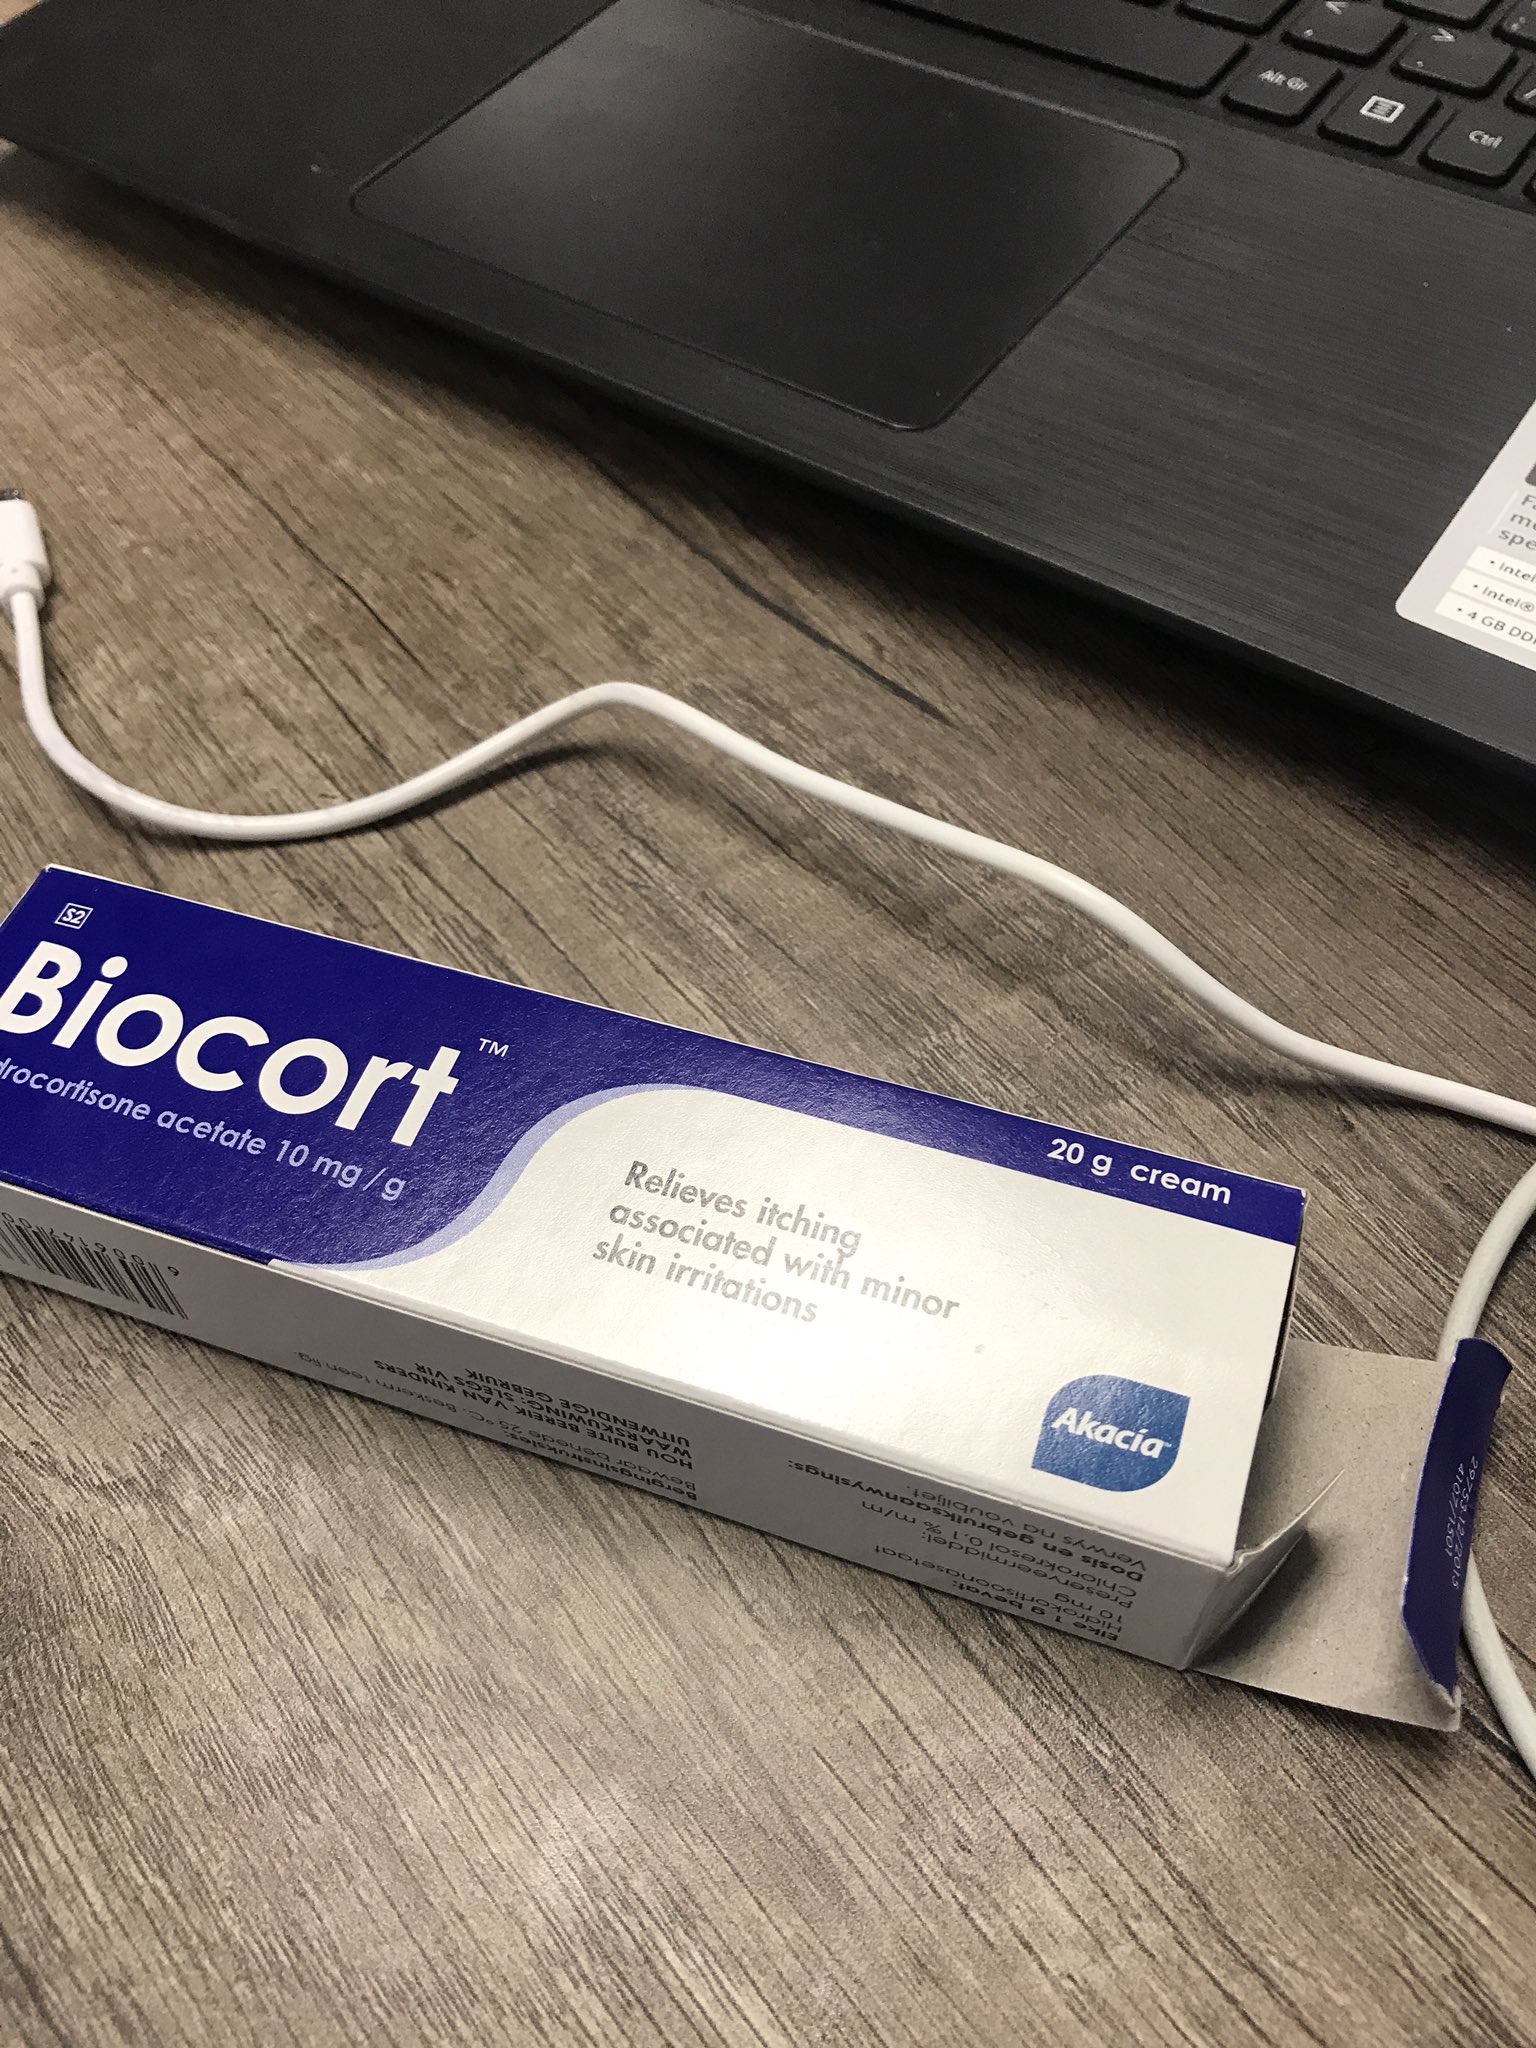 biocort